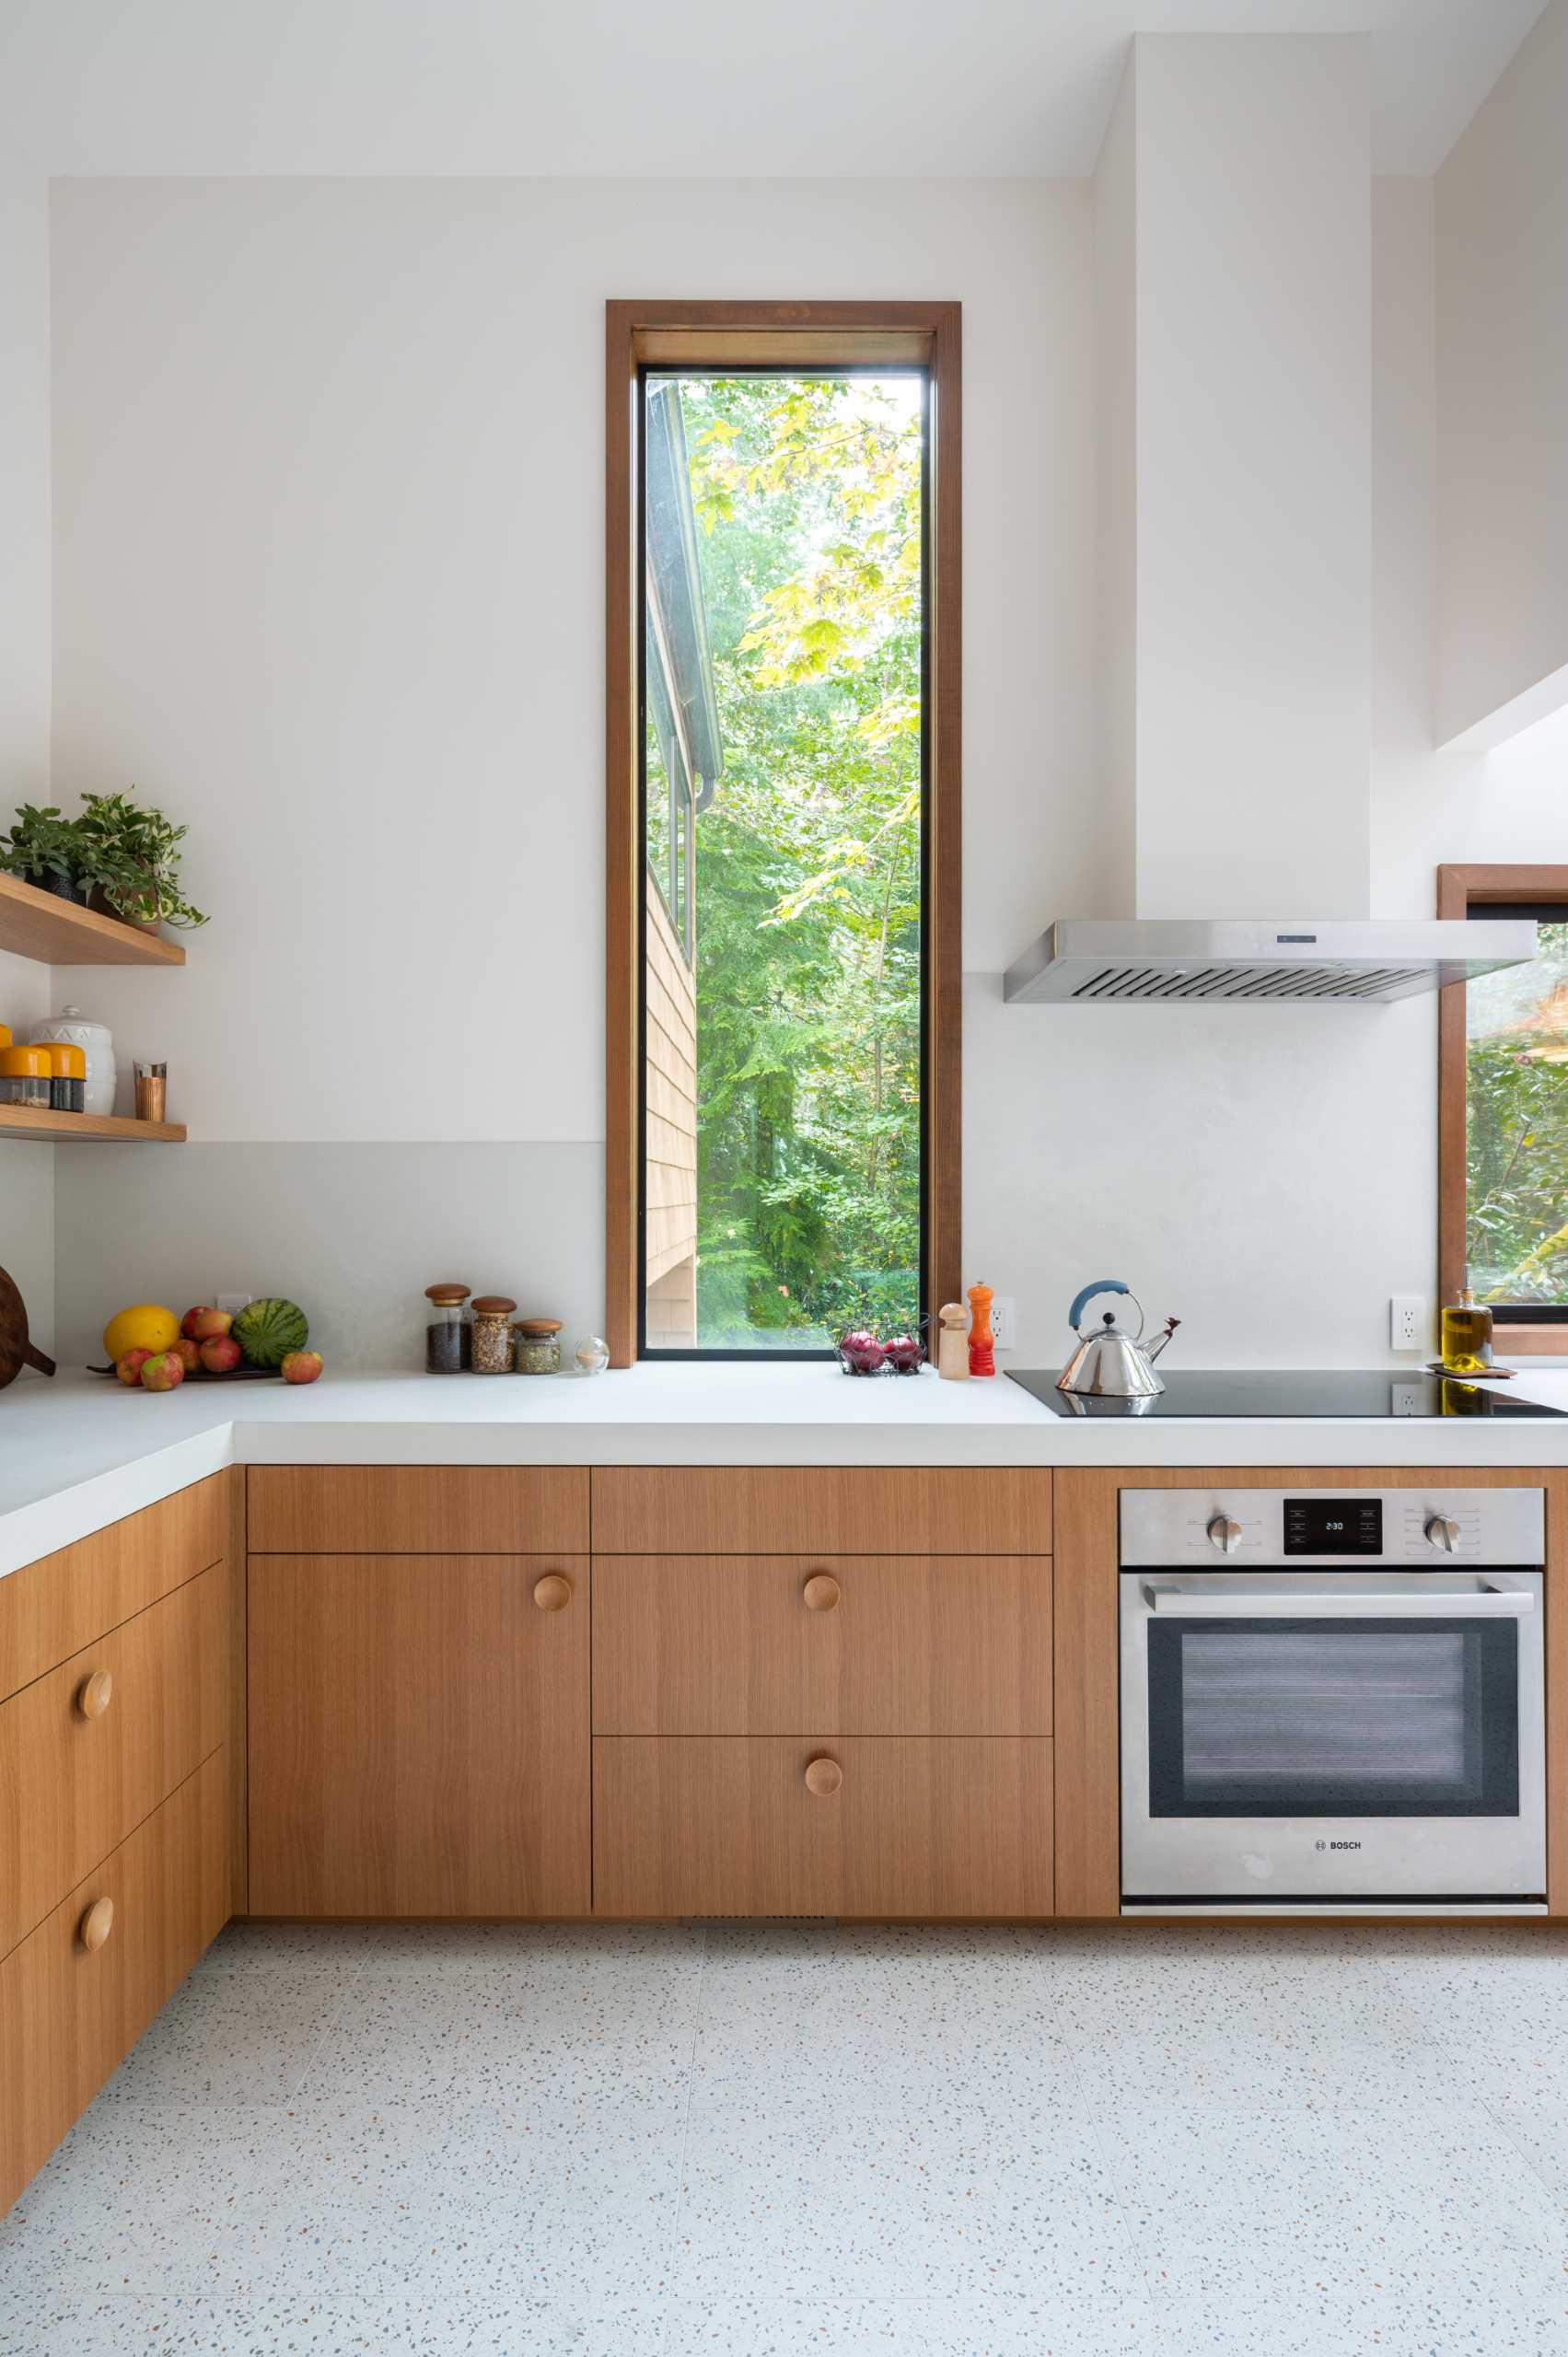 آشپزخانه ای بازسازی شده با کابینت های چوبی، میزهای ضخیم، و پنجره های بلند.